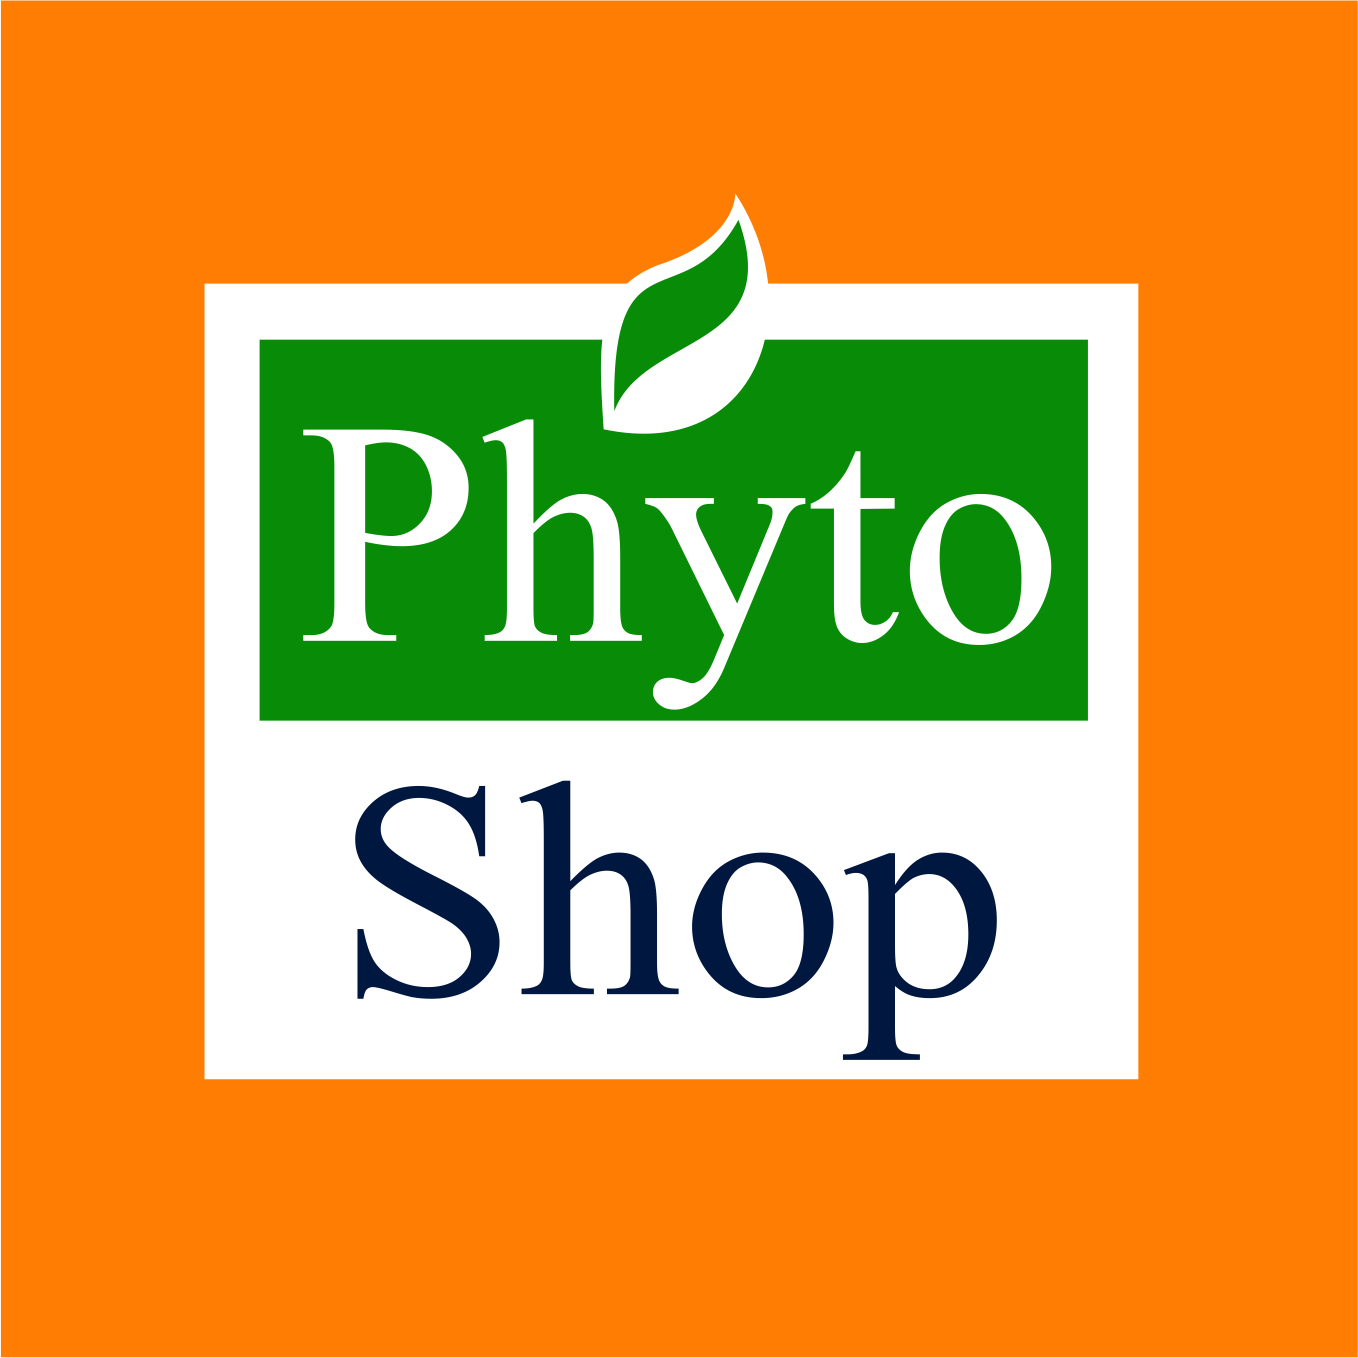 Phytoshop Panizza Fitoterápicos